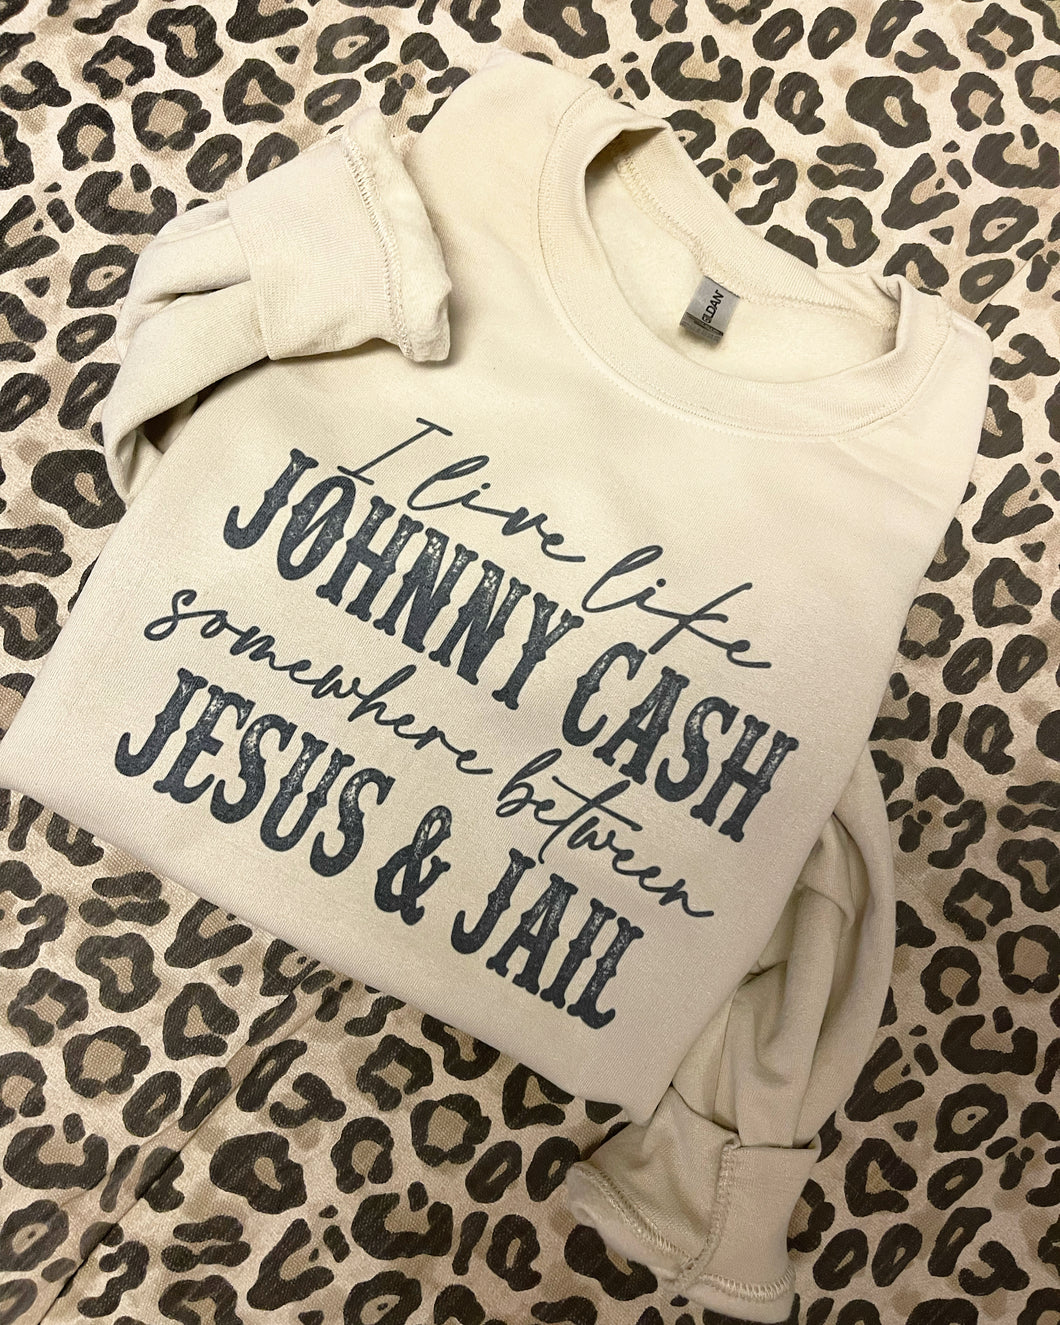 Between Jesus & Jail Sweatshirt 🙏🏻🖤